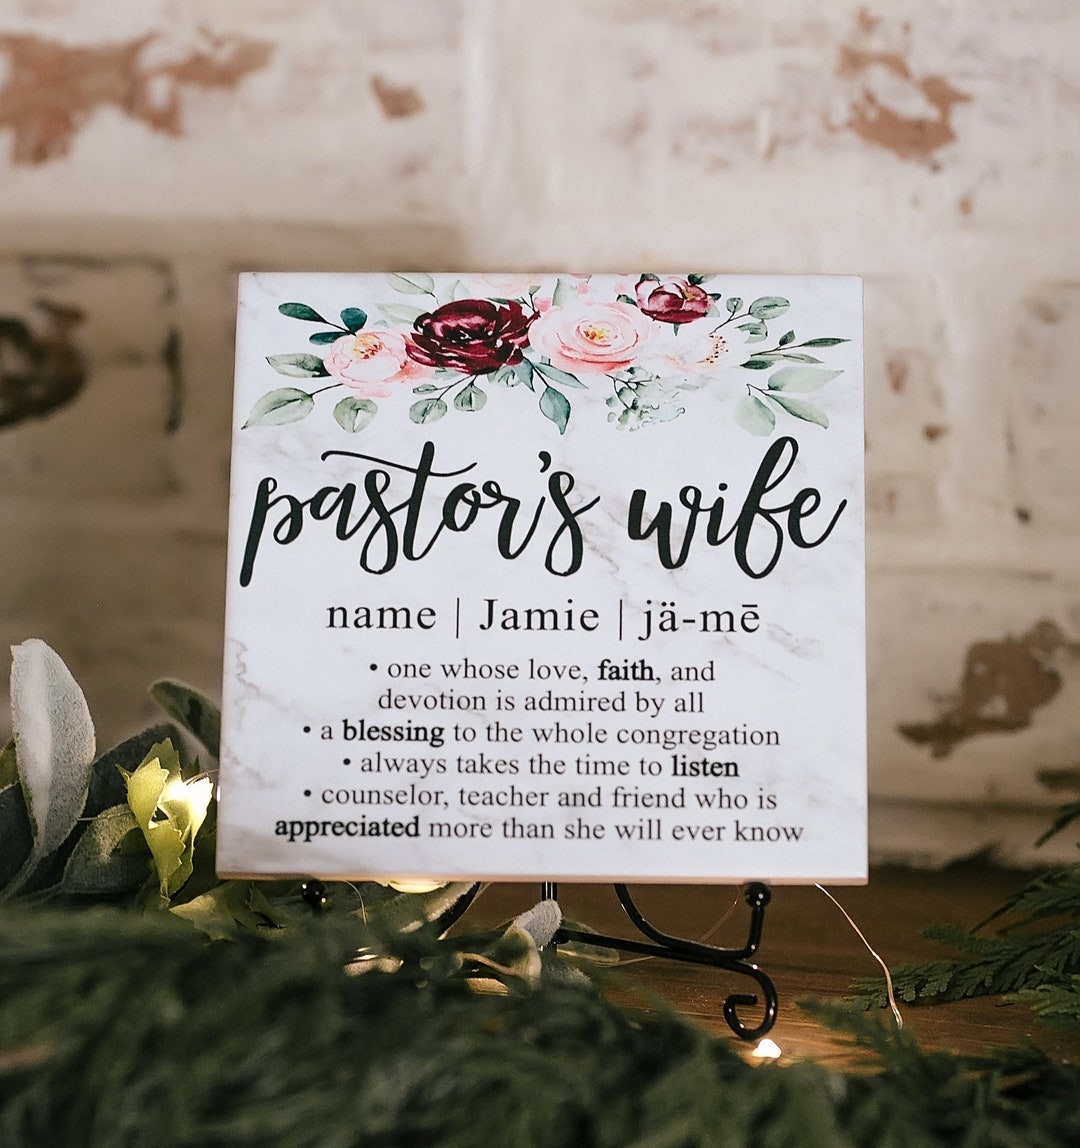 sex confessions of pastors wives Adult Pics Hq